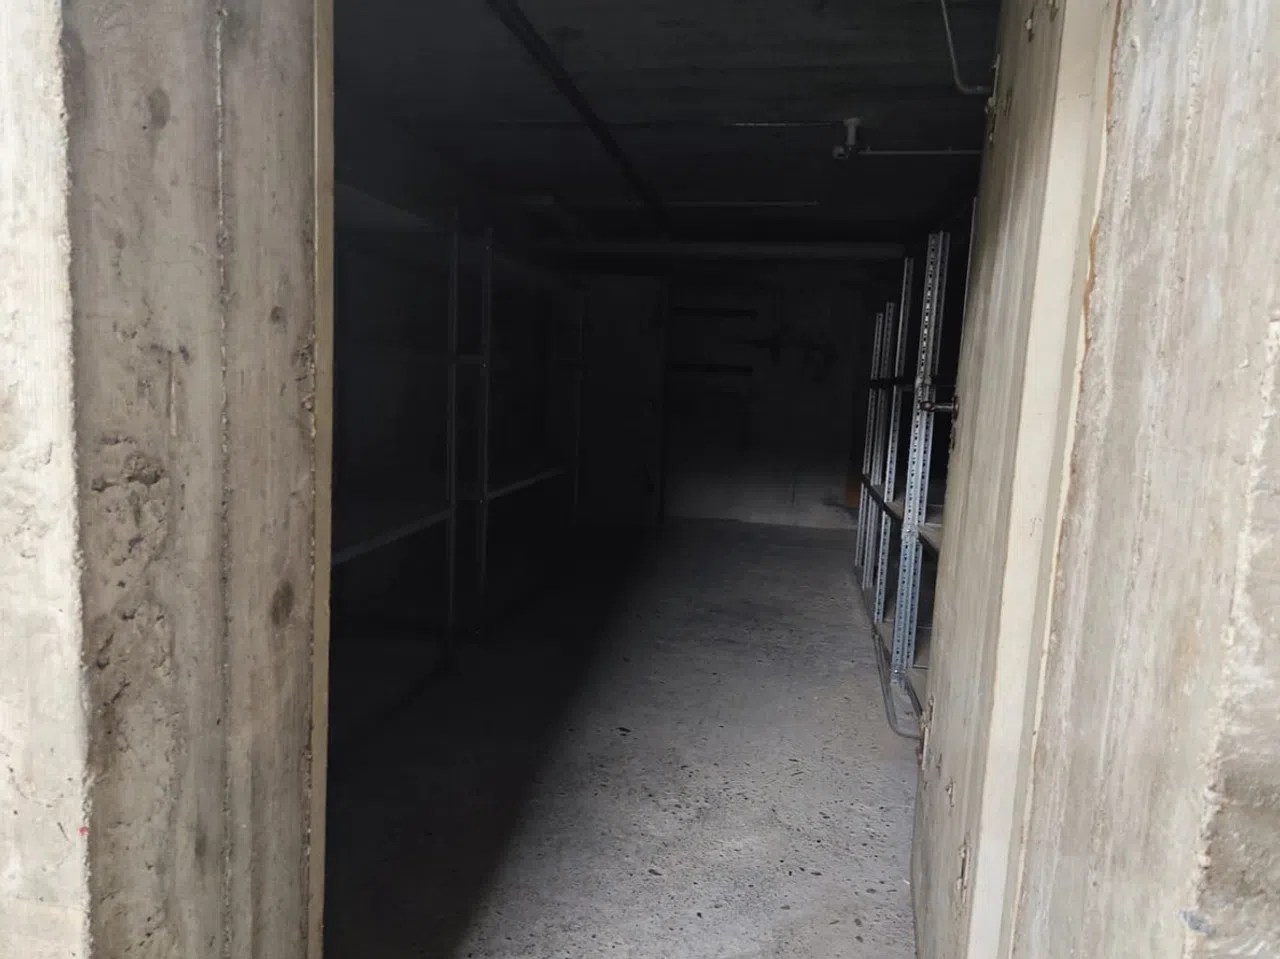 这个入口通向“怪爷爷”生活了27年的地下室。如今这里一片死寂。